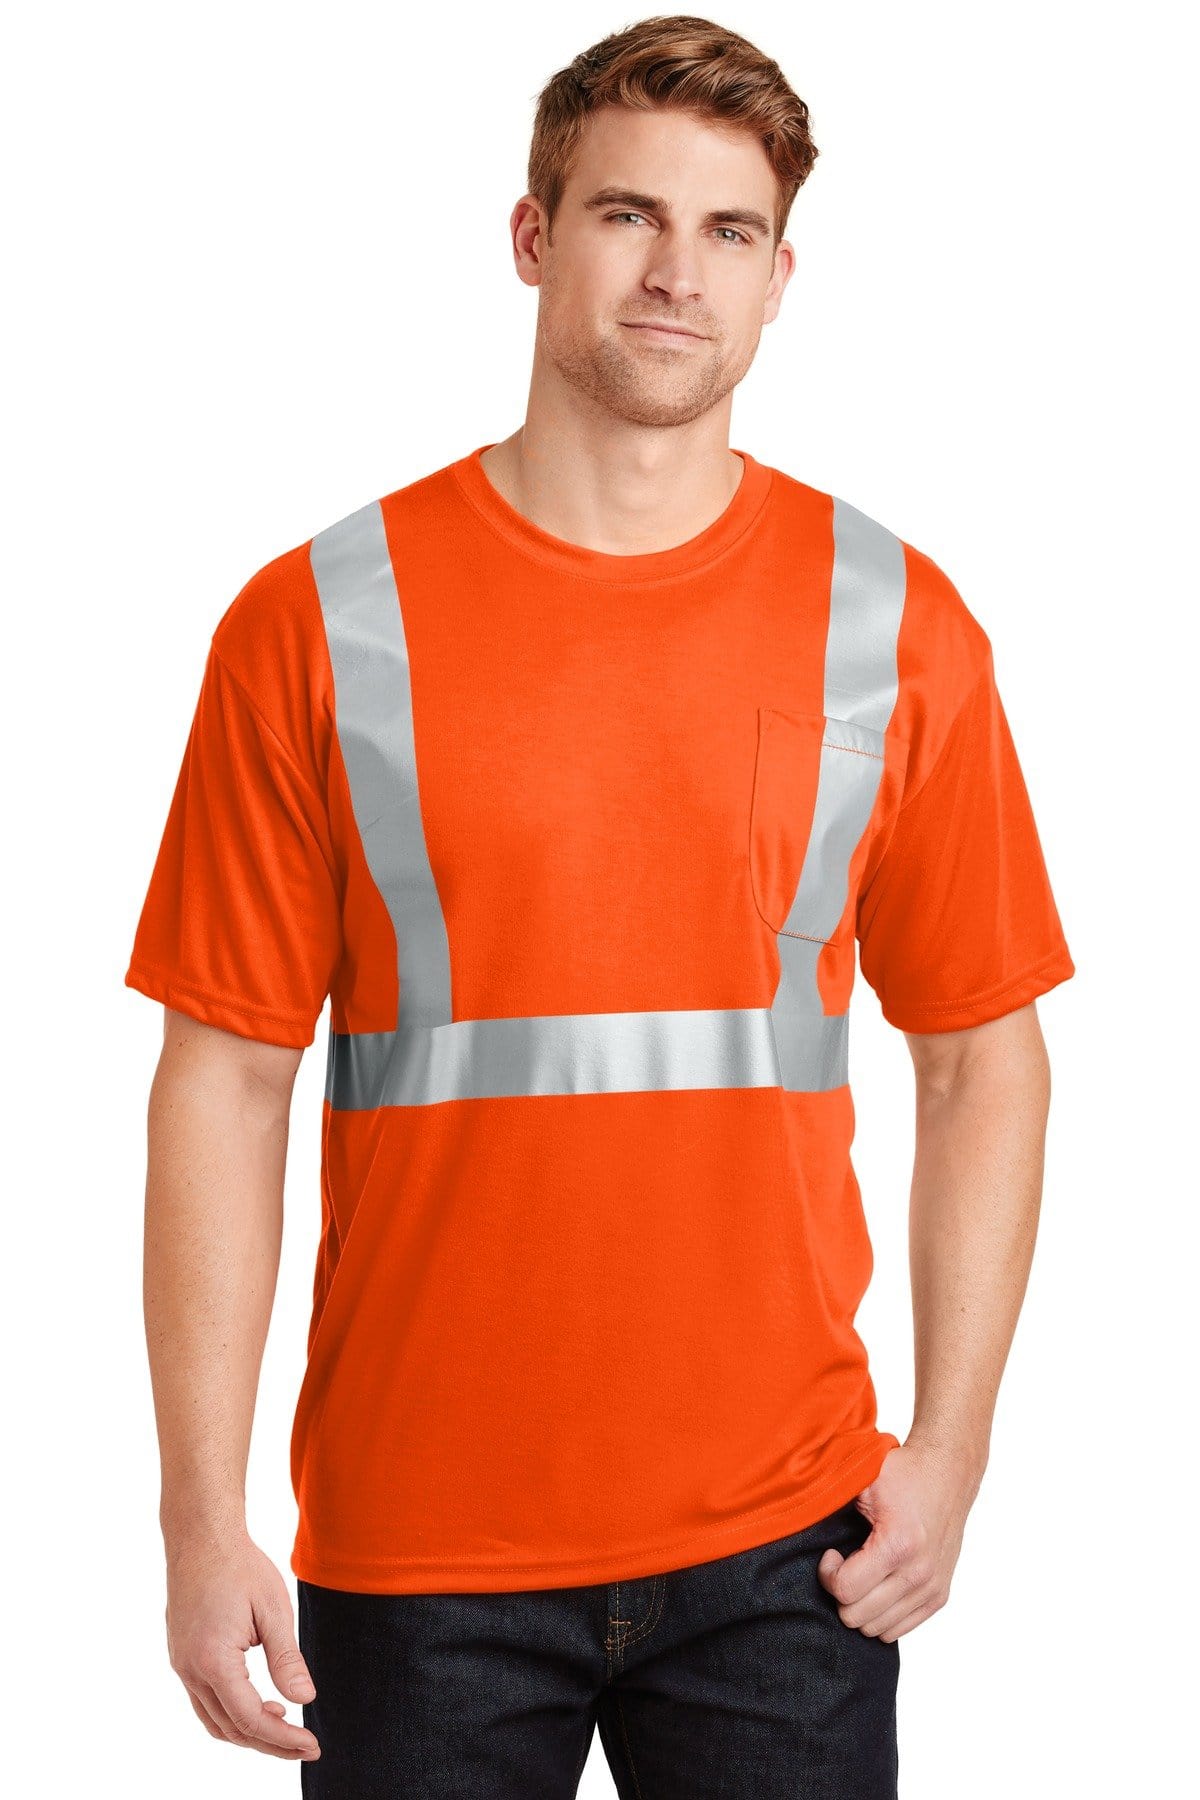 CornerStone ® - ANSI 107 Class 2 Safety T-Shirt. CS401